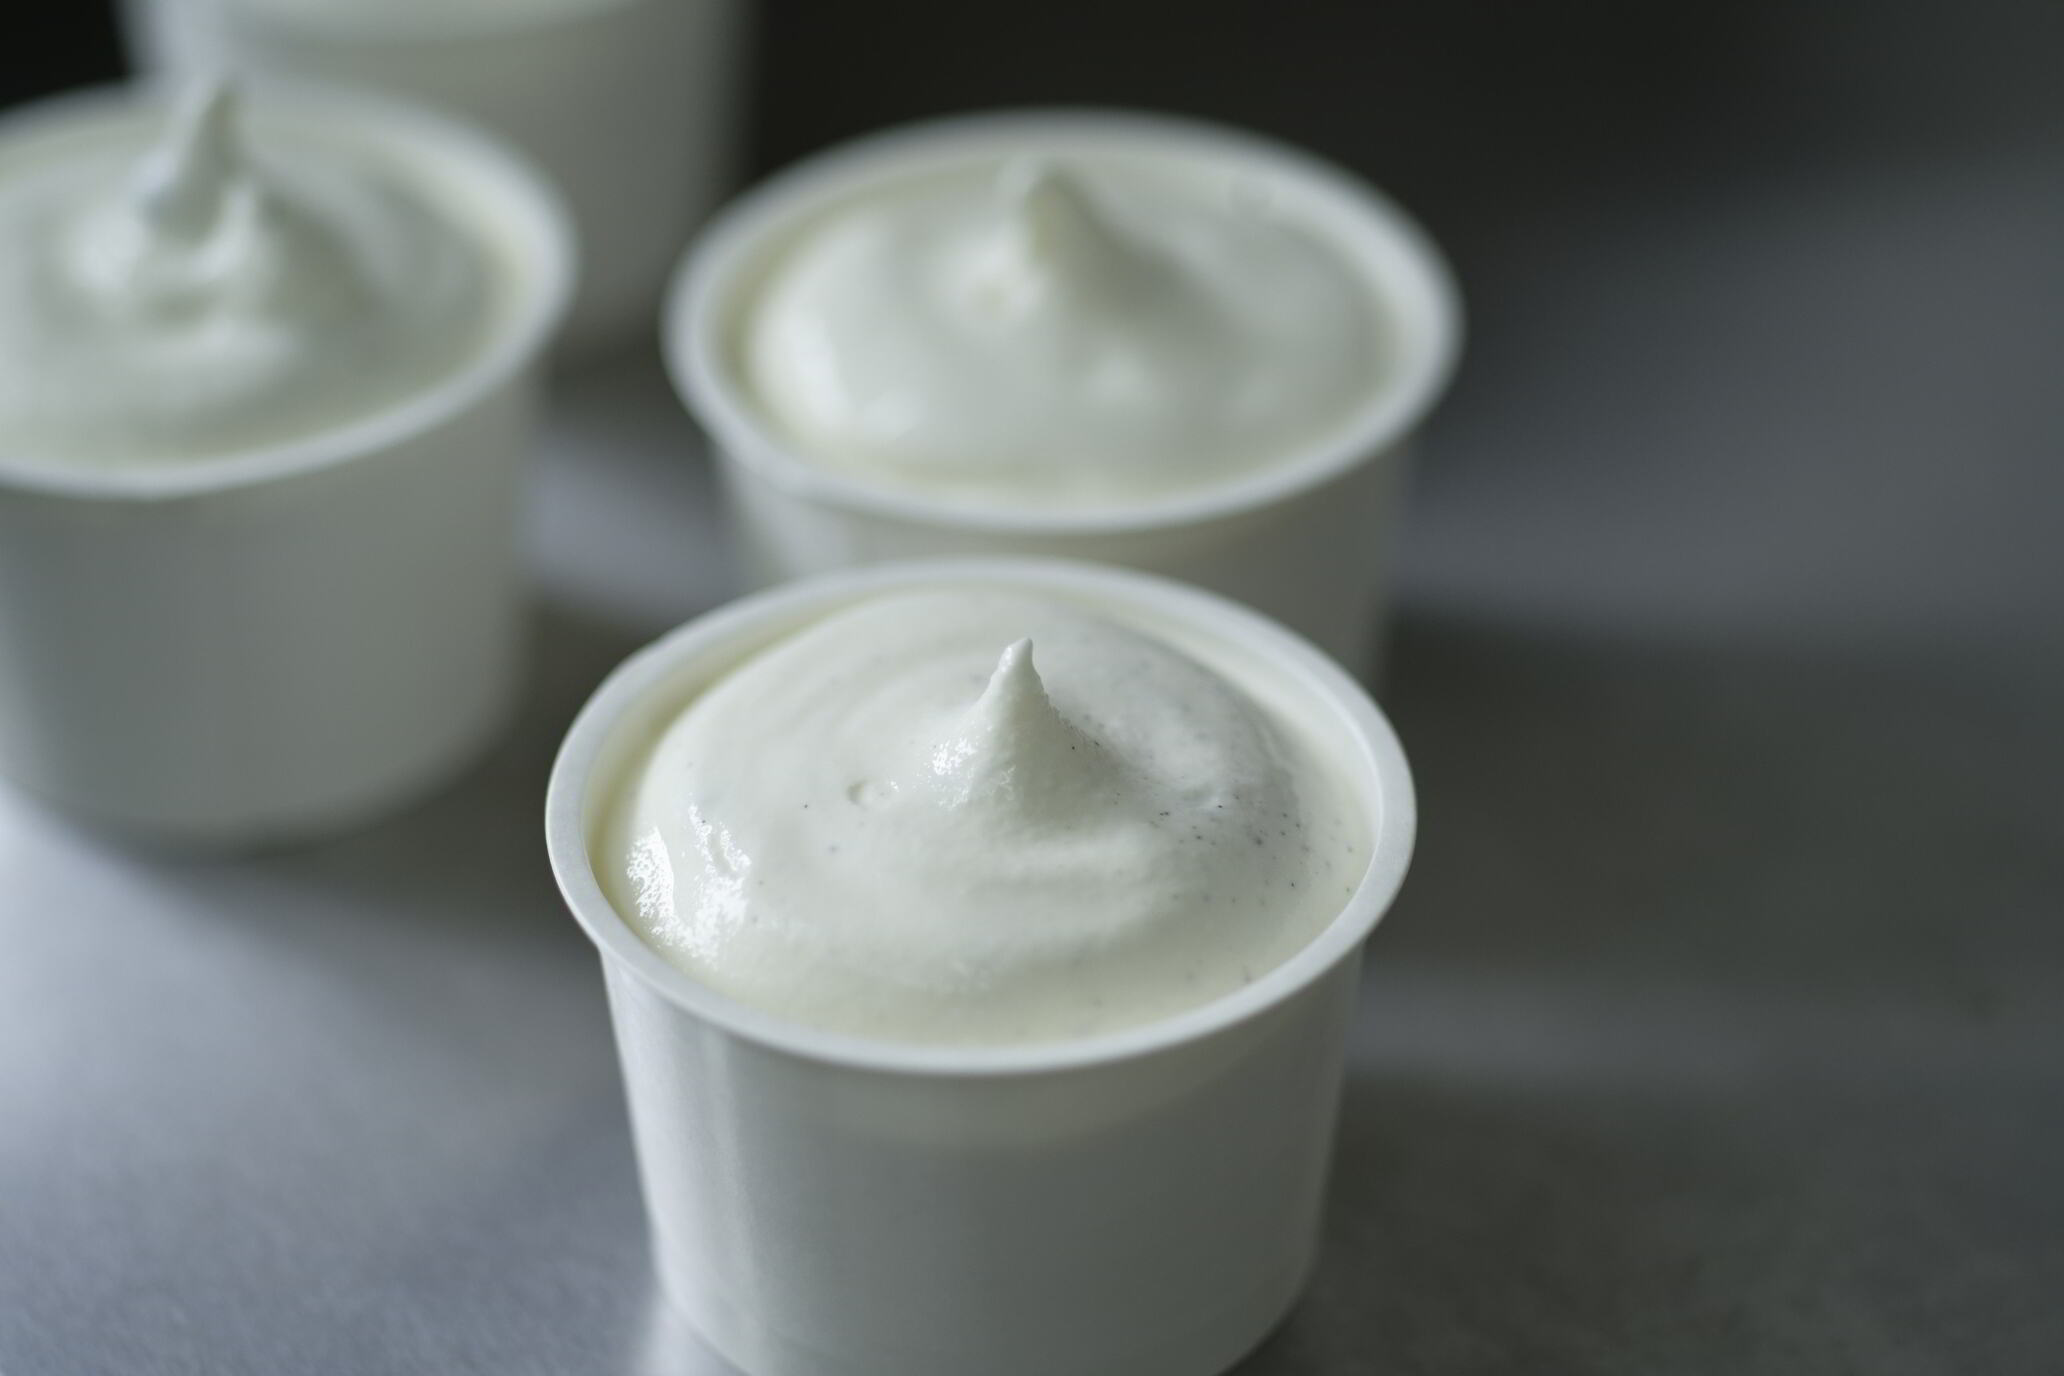 ひらかわ牧場のしぼりたて生乳で作ったアイスクリーム【牧場おすすめの2種8個入り】